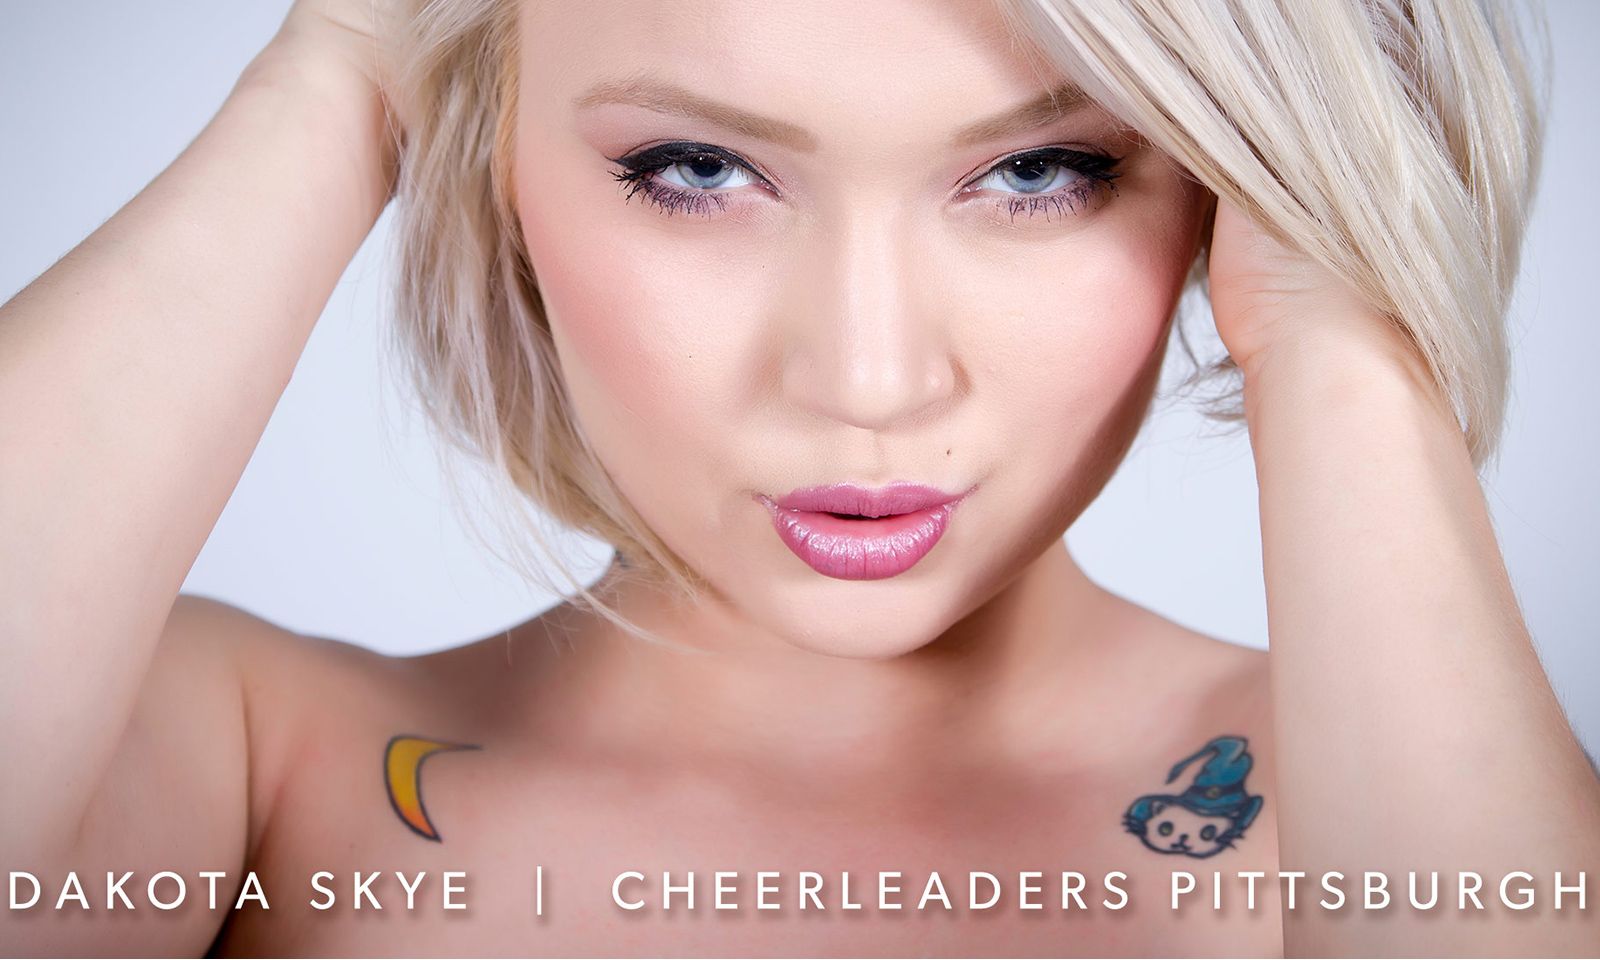 Dakota Skye To Feature At Cheerleaders In Pittsburgh This Weekend